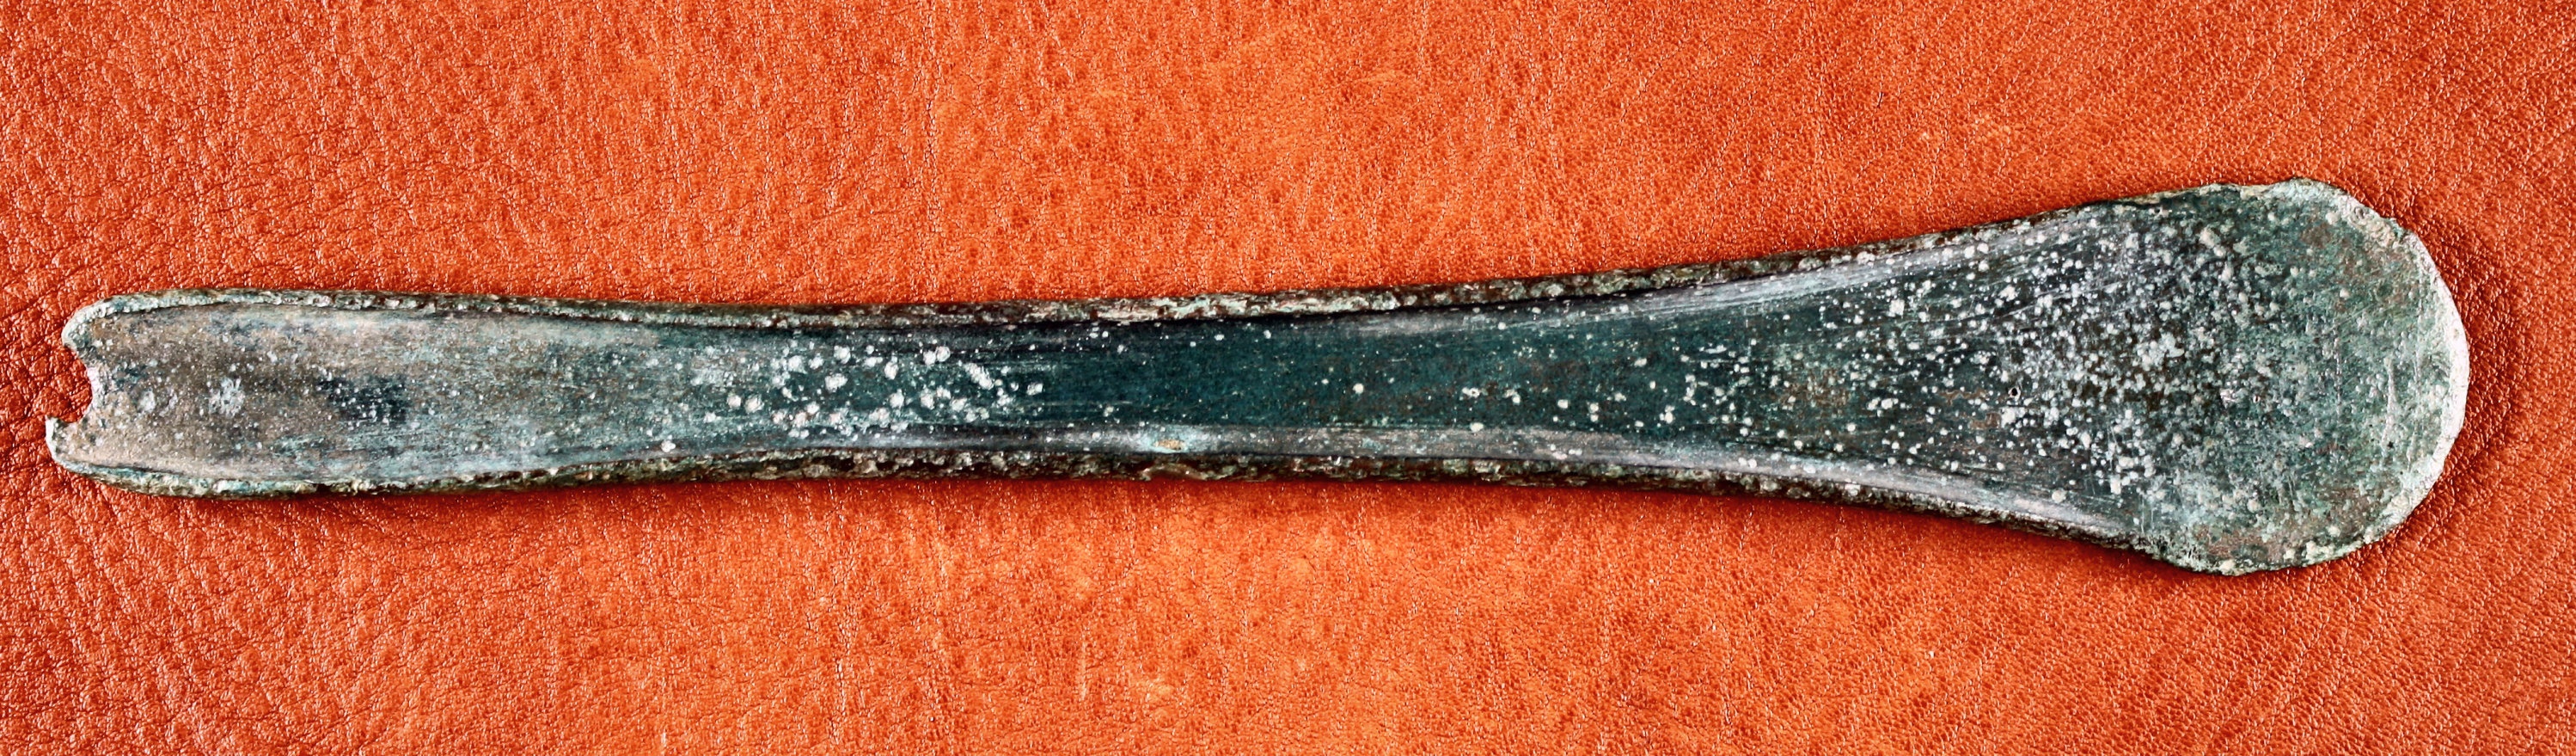 Randleistenbeil vom Typ „Rümlang“ ais dem Hortfund von Kläden (Johann-Friedrich-Danneil-Museum Salzwedel CC BY-NC-SA)